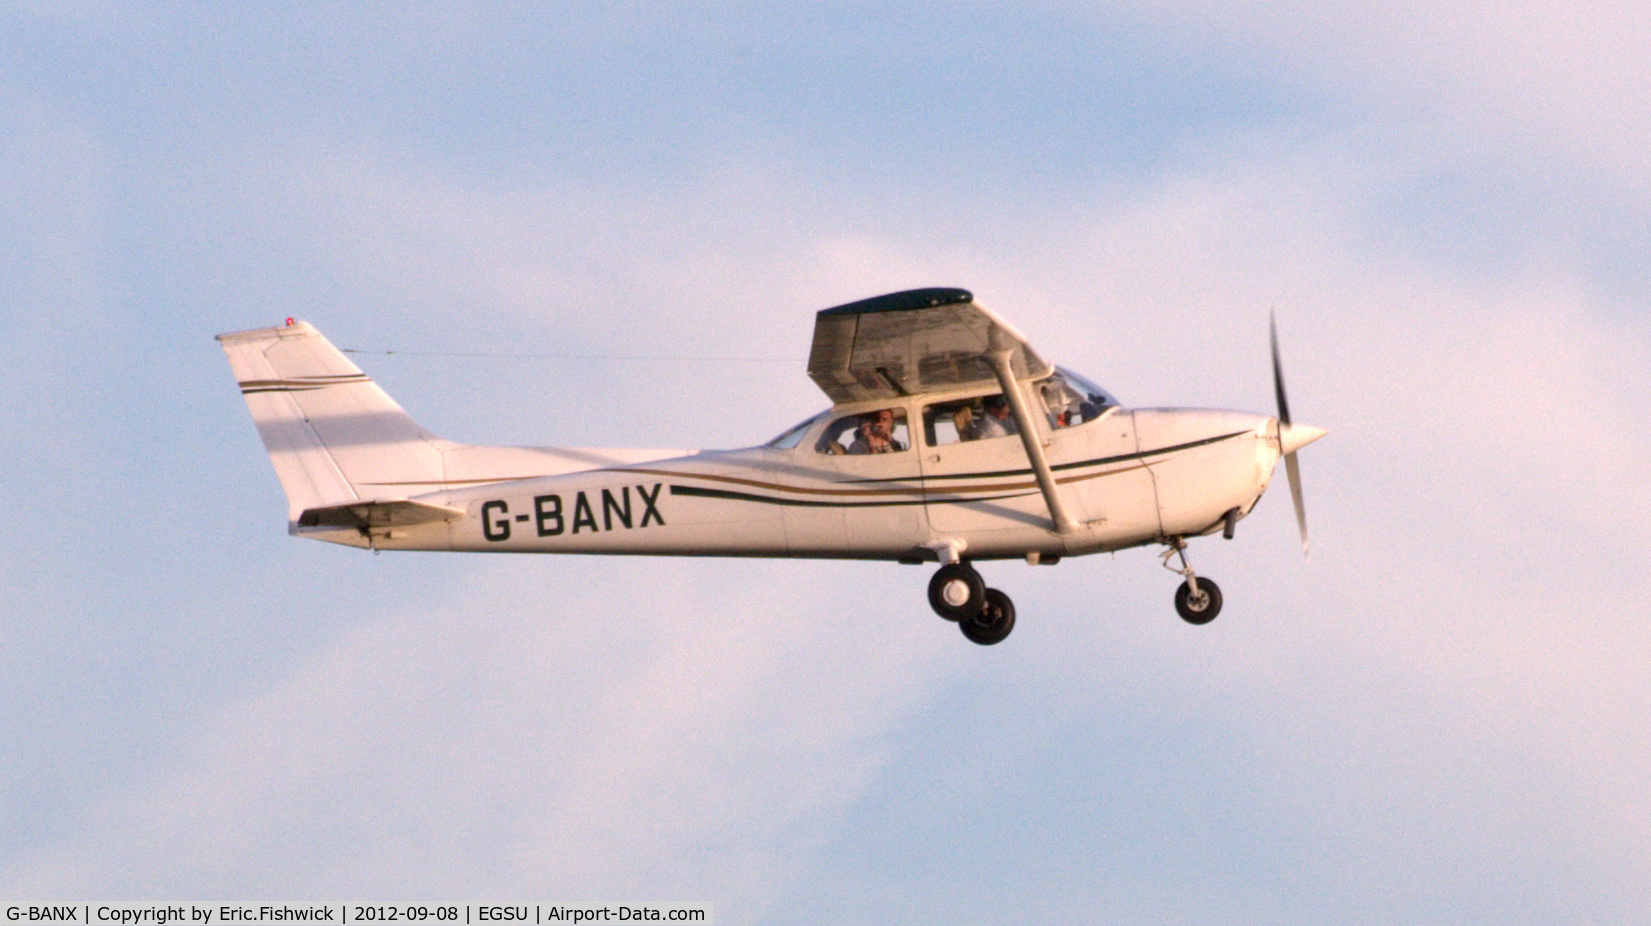 G-BANX, 1973 Reims F172M Skyhawk Skyhawk C/N 0941, 4. G-BANX departing The Duxford Air Show, Sept. 2012.